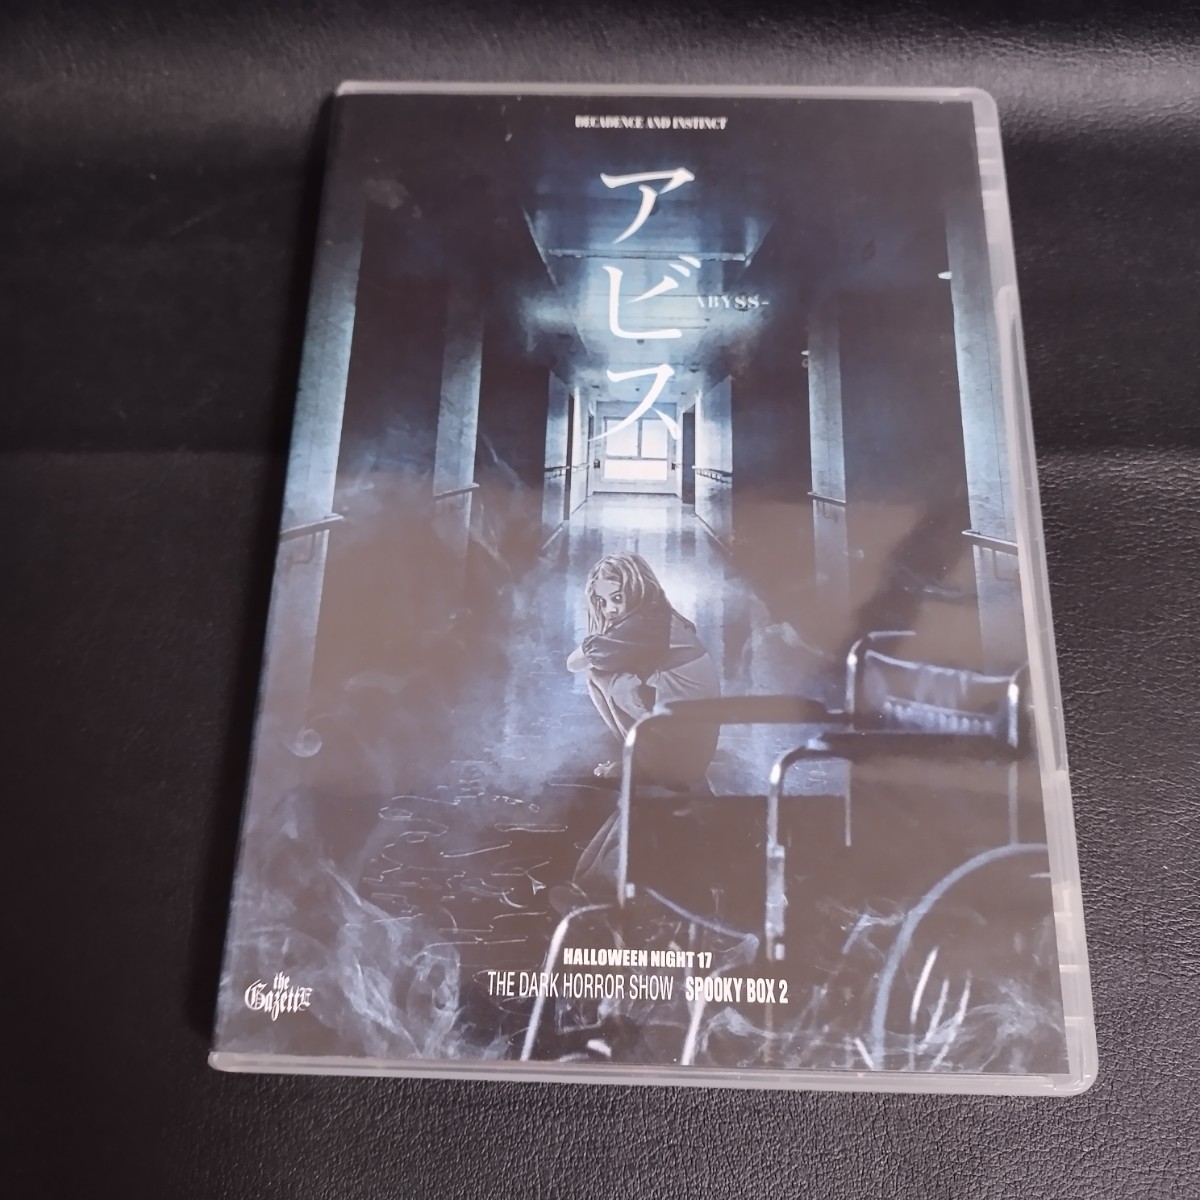 【ガゼット】 HALLOWEEN NIGHT 17 THE DARK HORROR SHOW SPOOKY BOX 2 アビス LUCY 邦楽BluRay 2018年 棚7の画像1